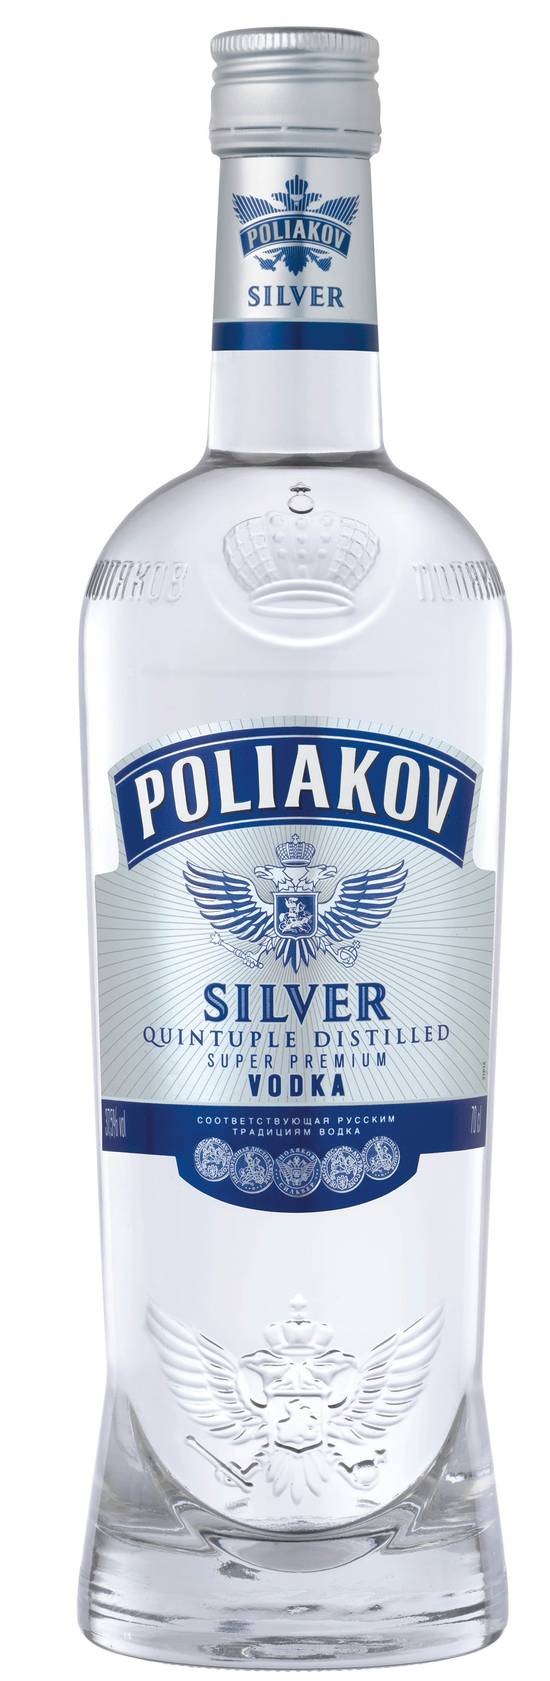 Vodka Poliakov Silver 37.5°